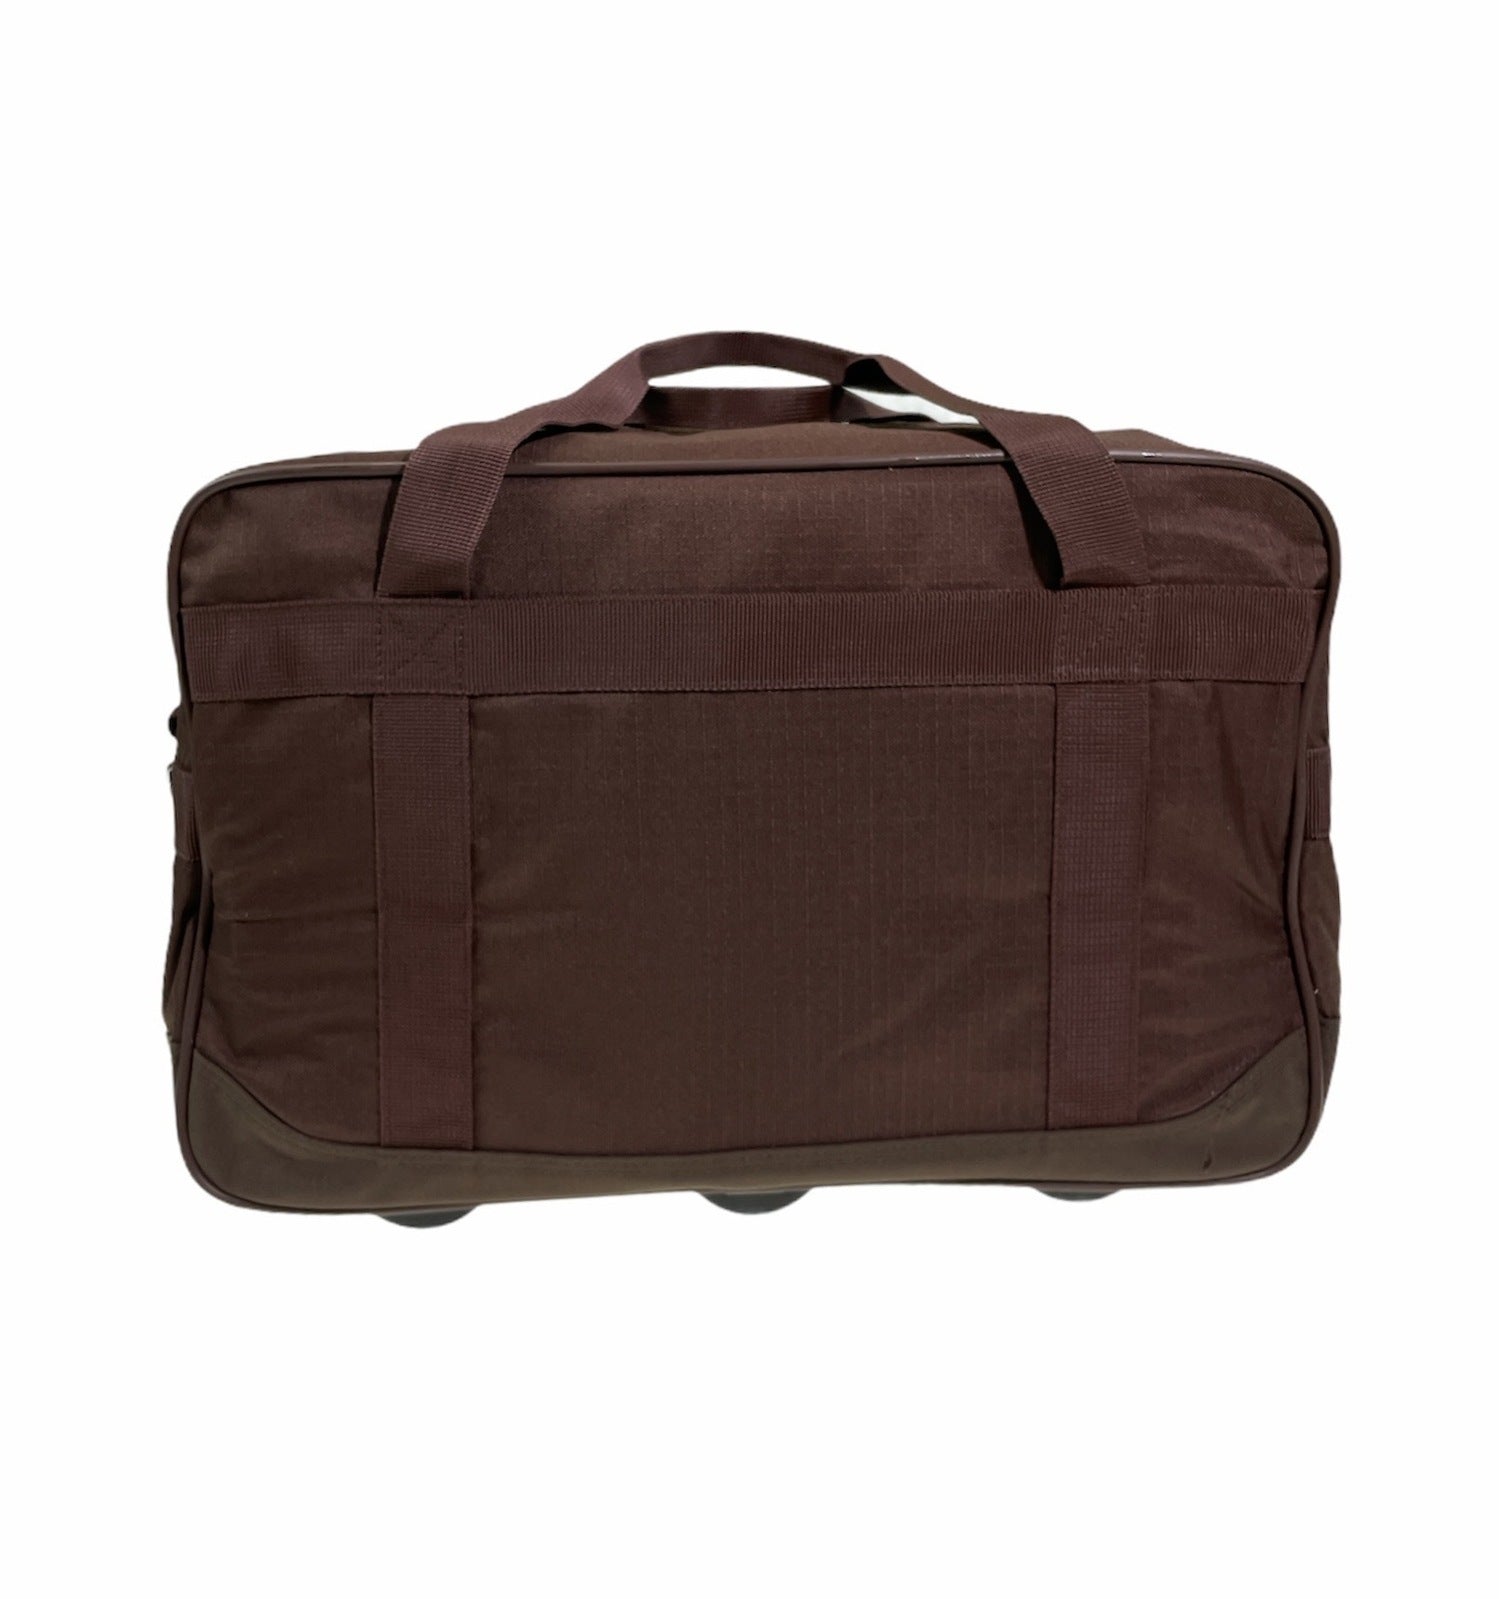 44L Foldable Duffel Bag Gym Sports Luggage Travel Foldaway School Bags - Rust